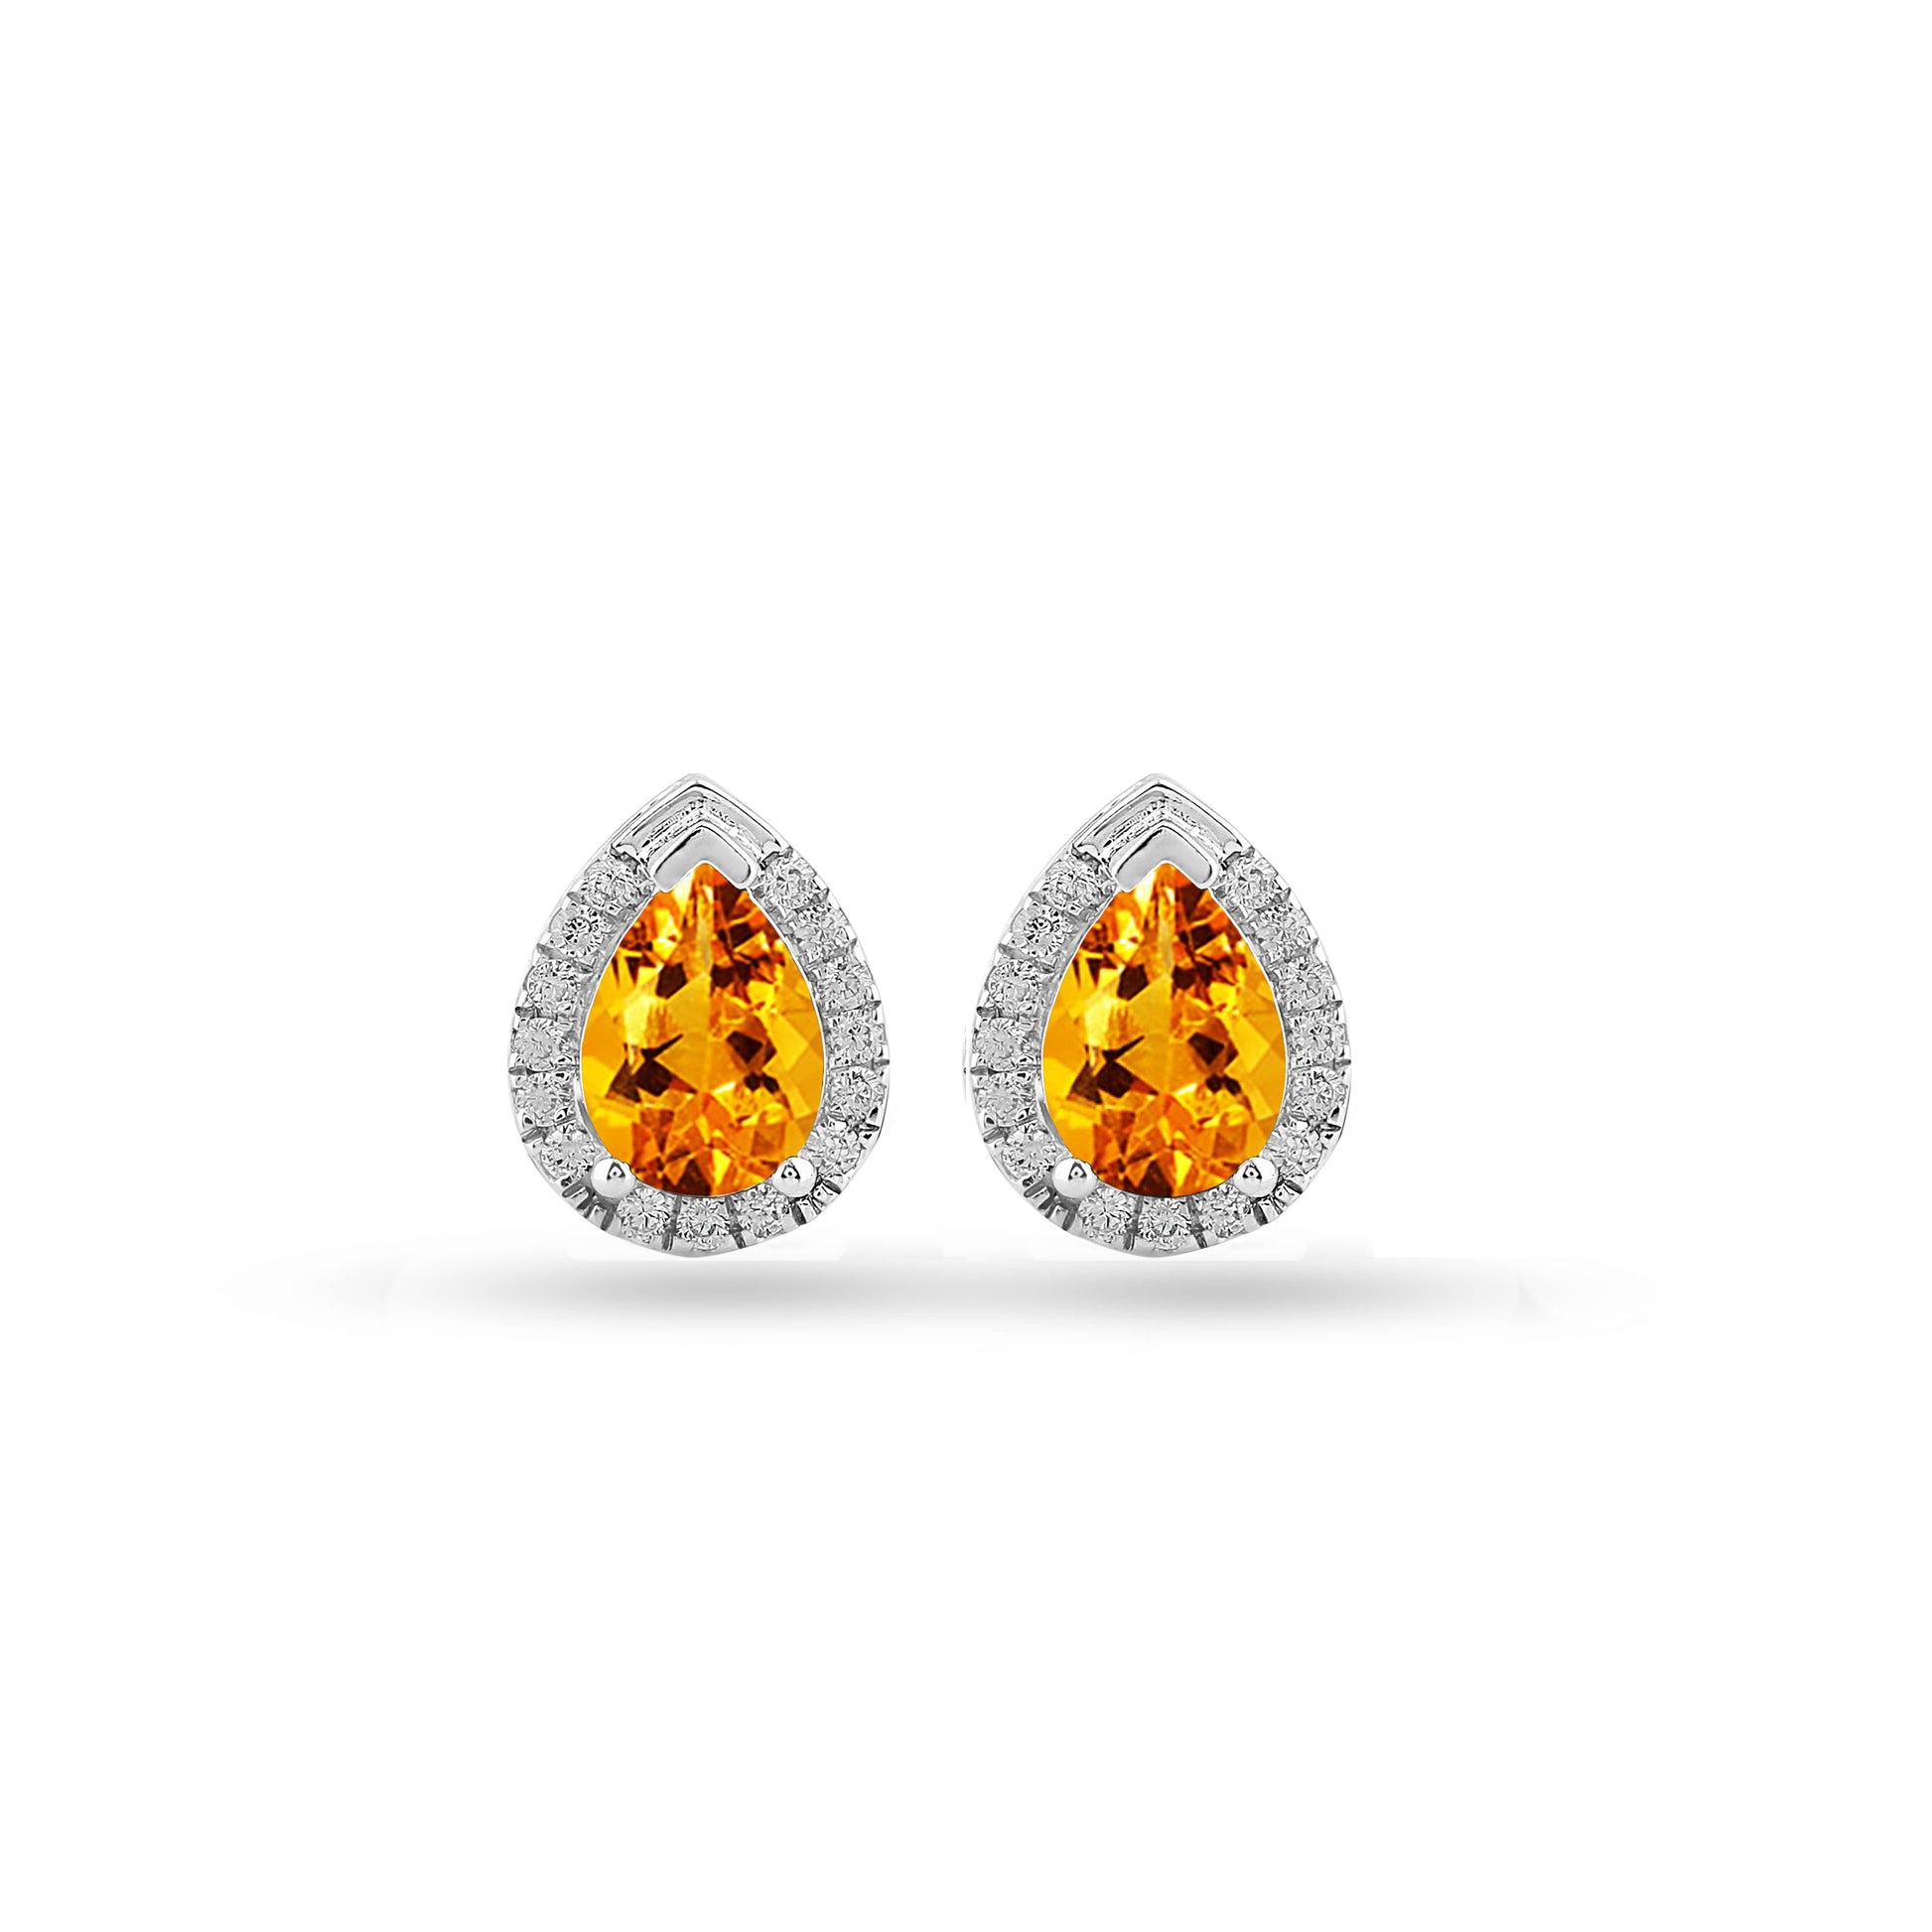  Pear-shaped earrings